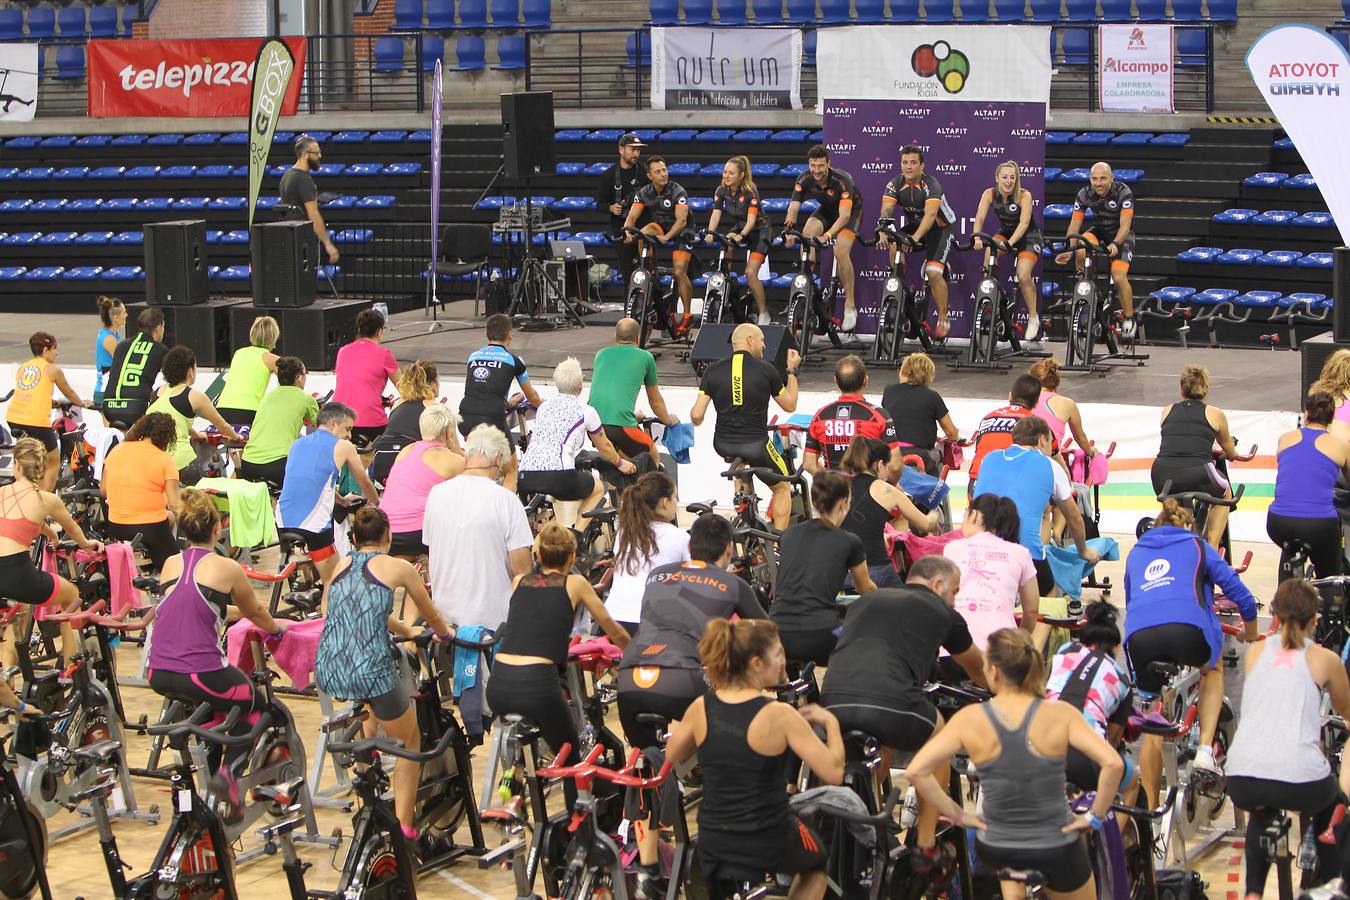 Se ha celebrado en el Palacio de los Deportes el III Logroño Fitness Day, cuya recaudación se destinará de forma íntegra a la Asociación Española contra el Cáncer (AECC) para la investigación sobre esta enfermedad